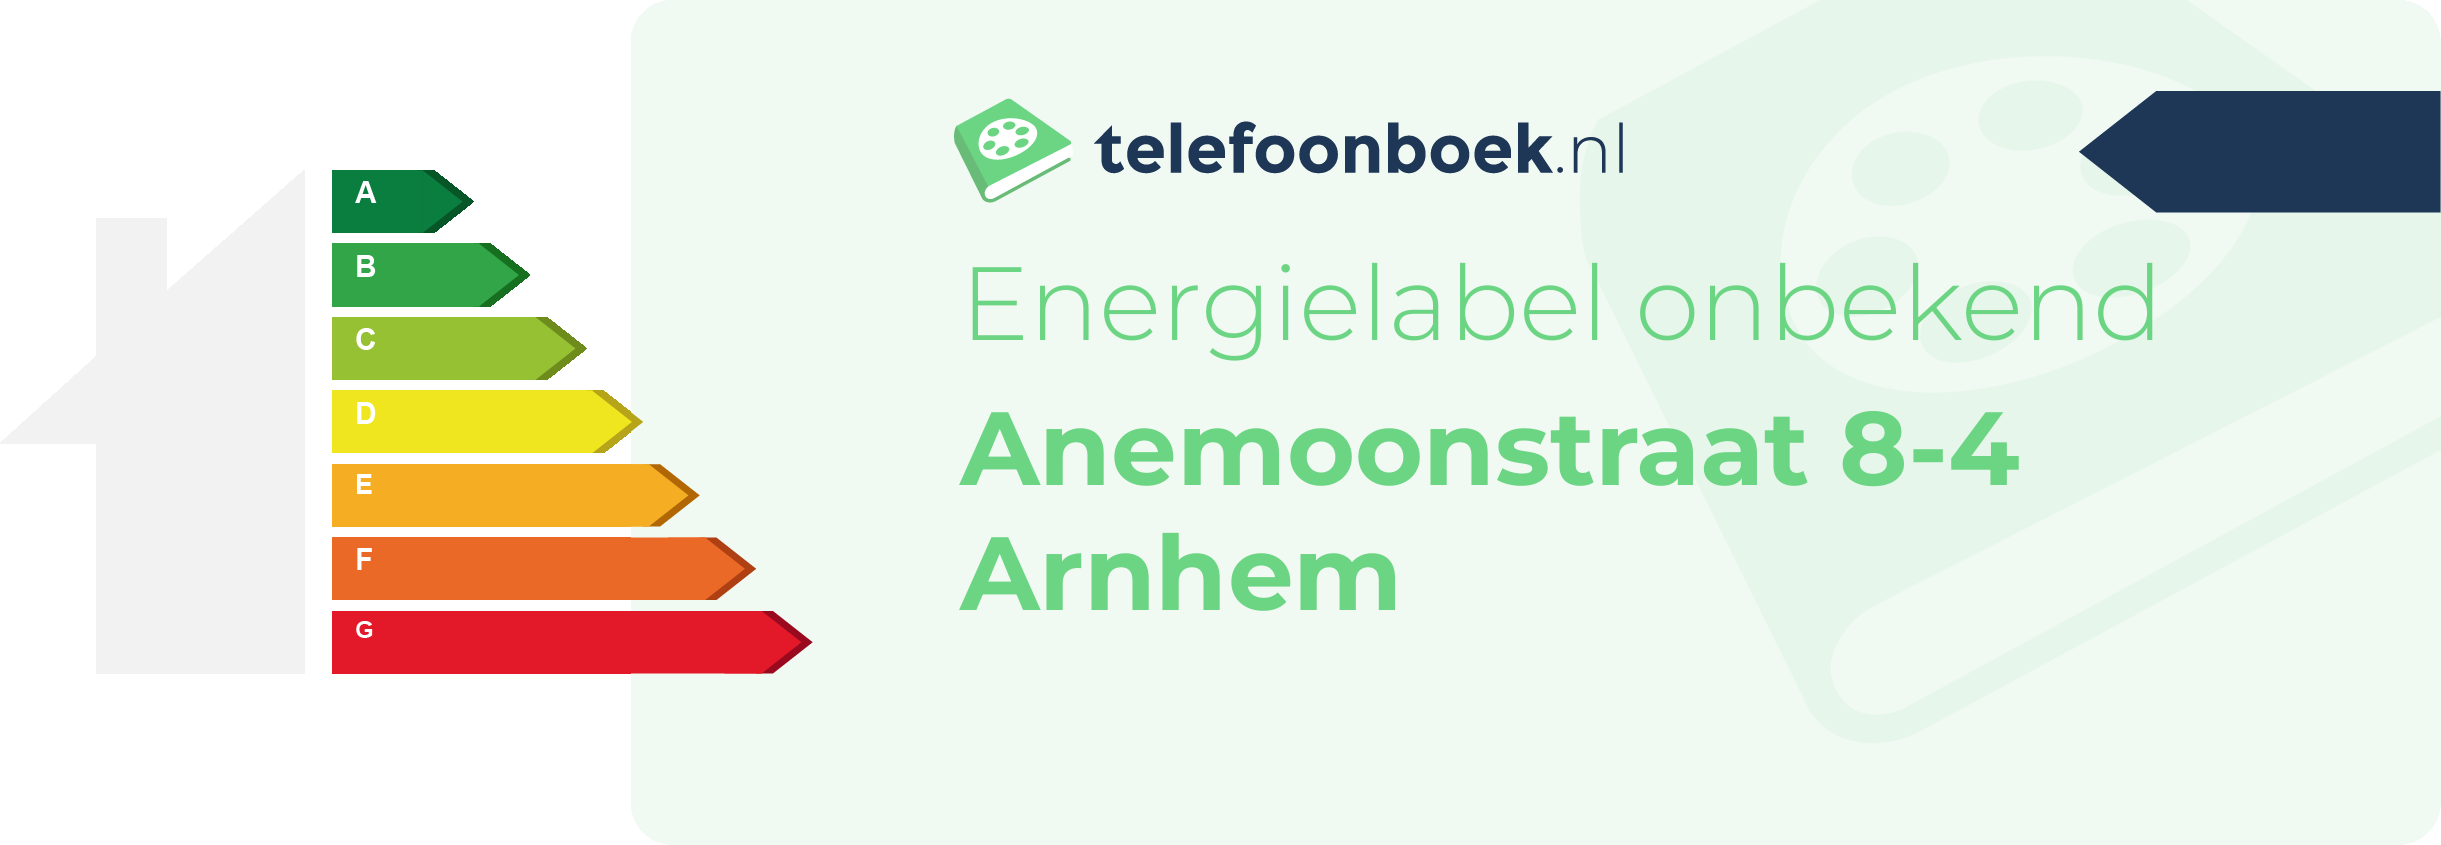 Energielabel Anemoonstraat 8-4 Arnhem